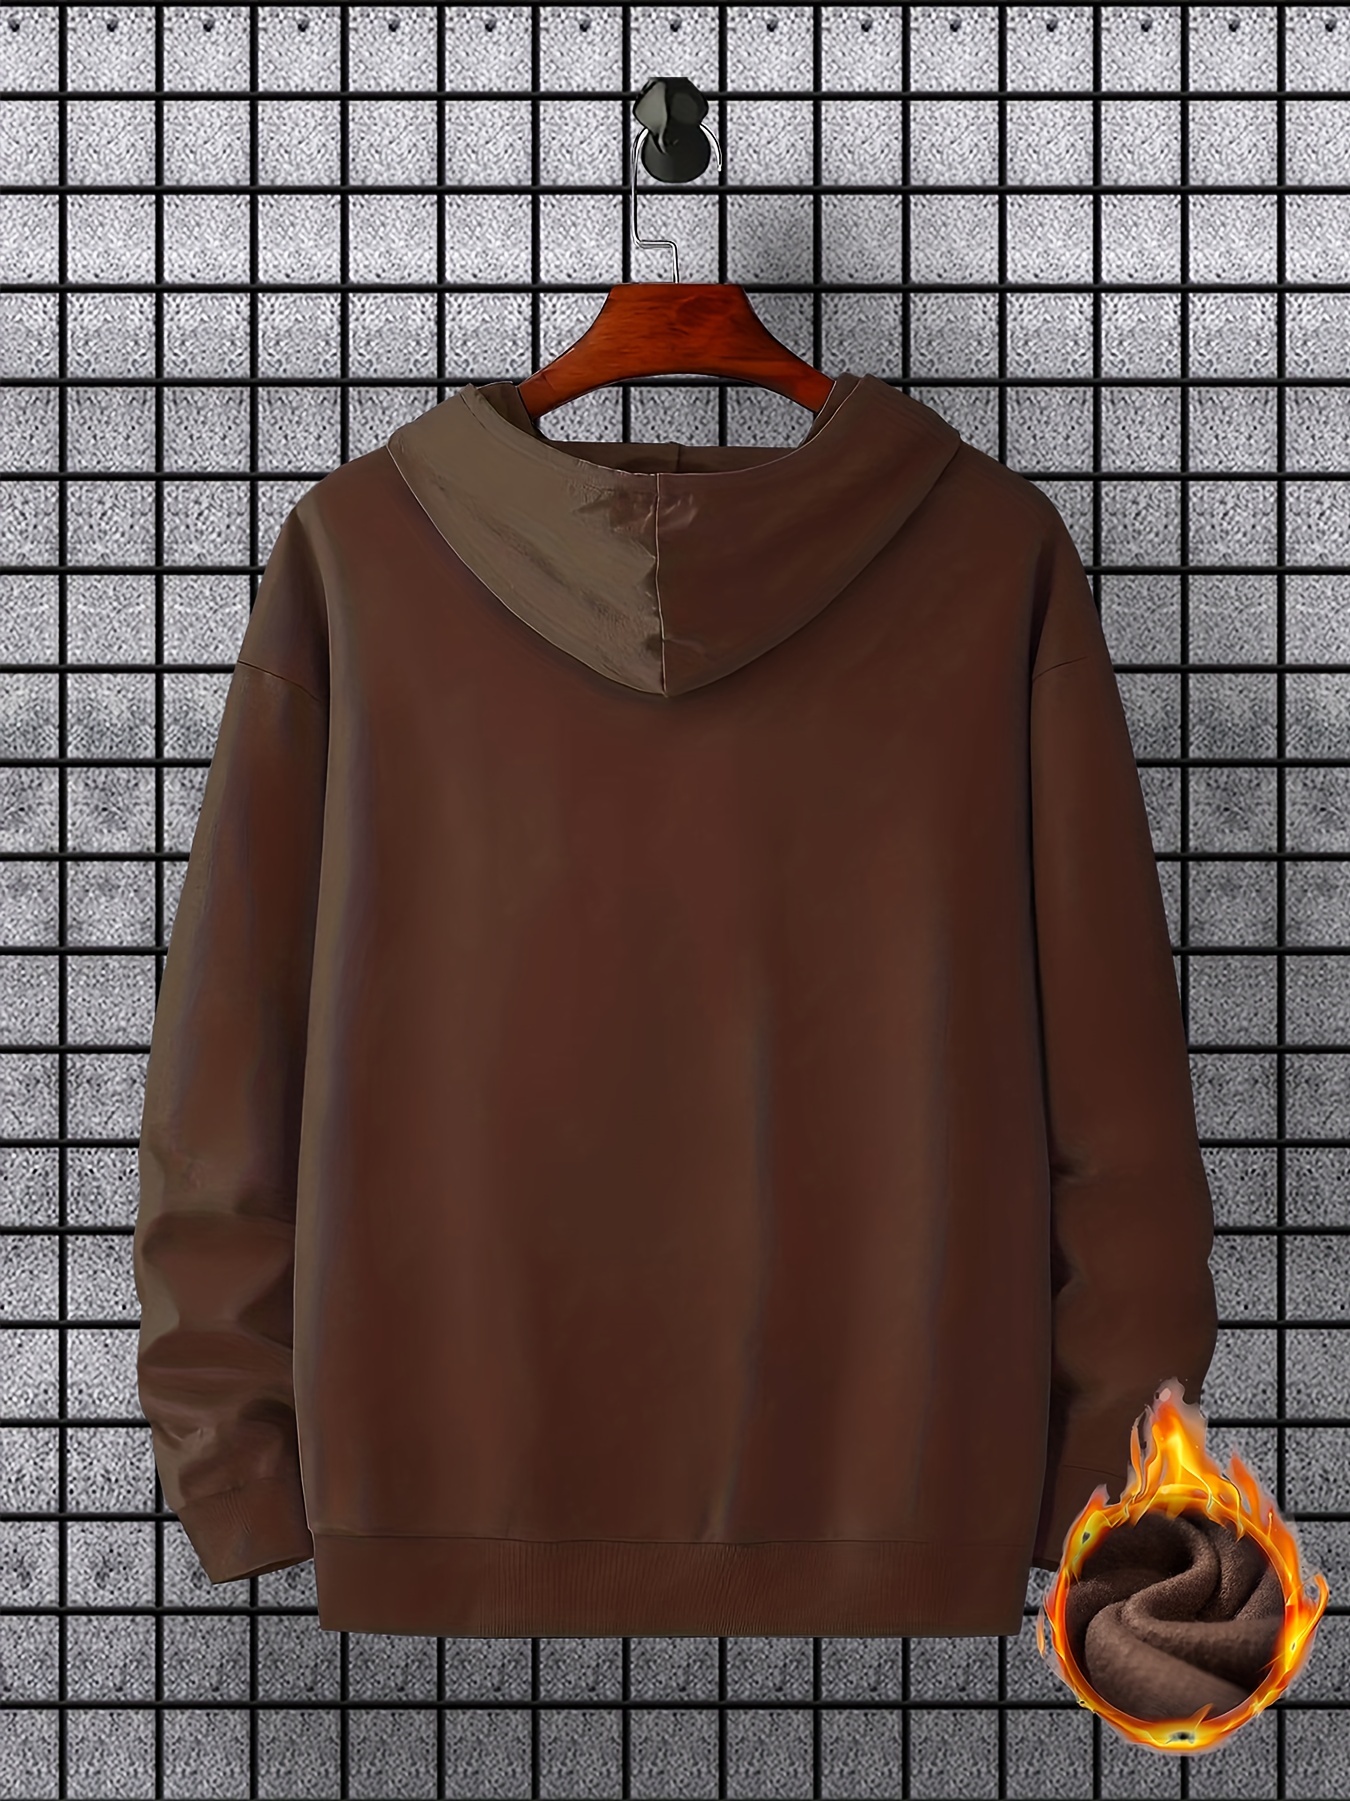 bus pattern warm hoodie with kangaroo pocket mens casual pullover hooded sweatshirt details 21